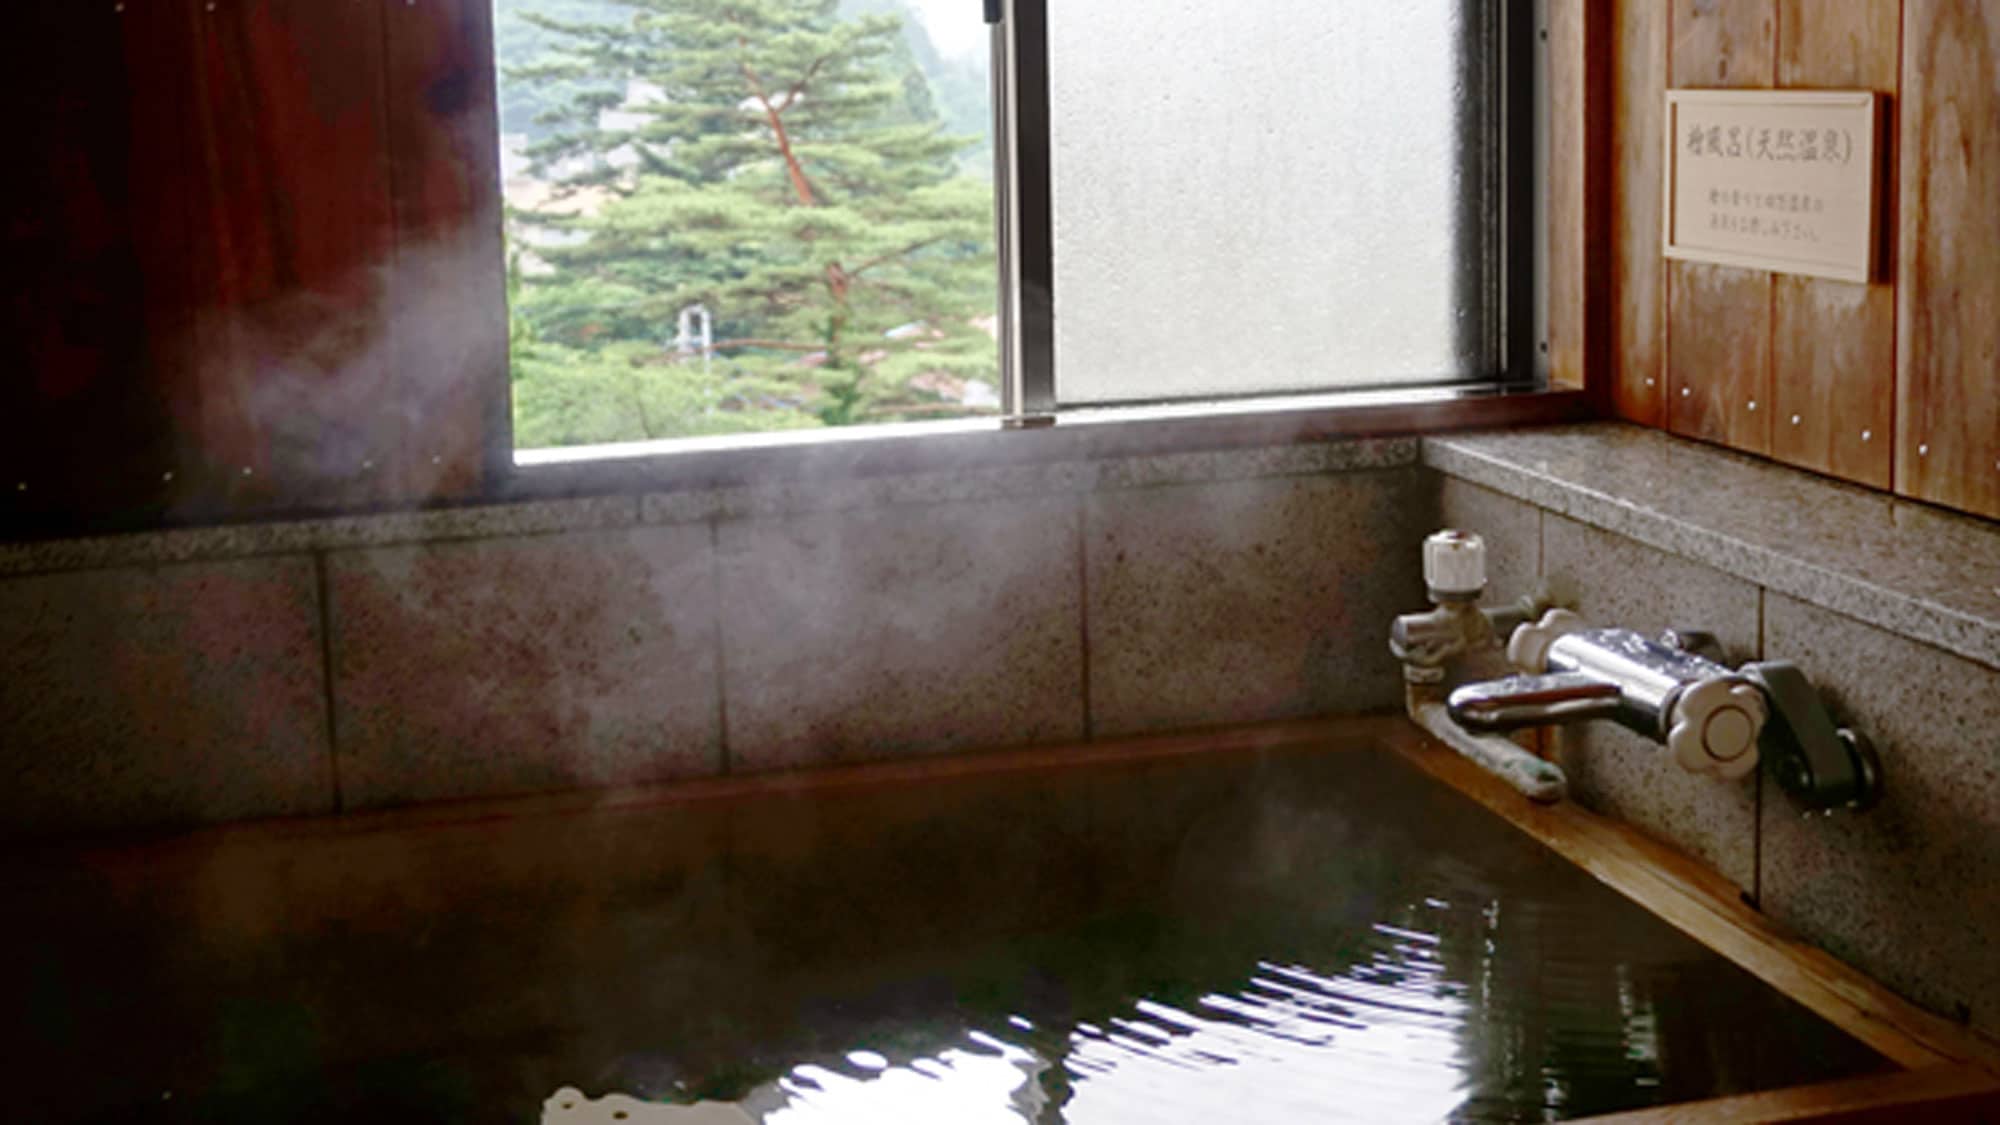 【프리미엄 기와칸】 히노키 욕조가있는 객실 히로 목욕탕은 객실에 따라 전망이 바뀝니다.